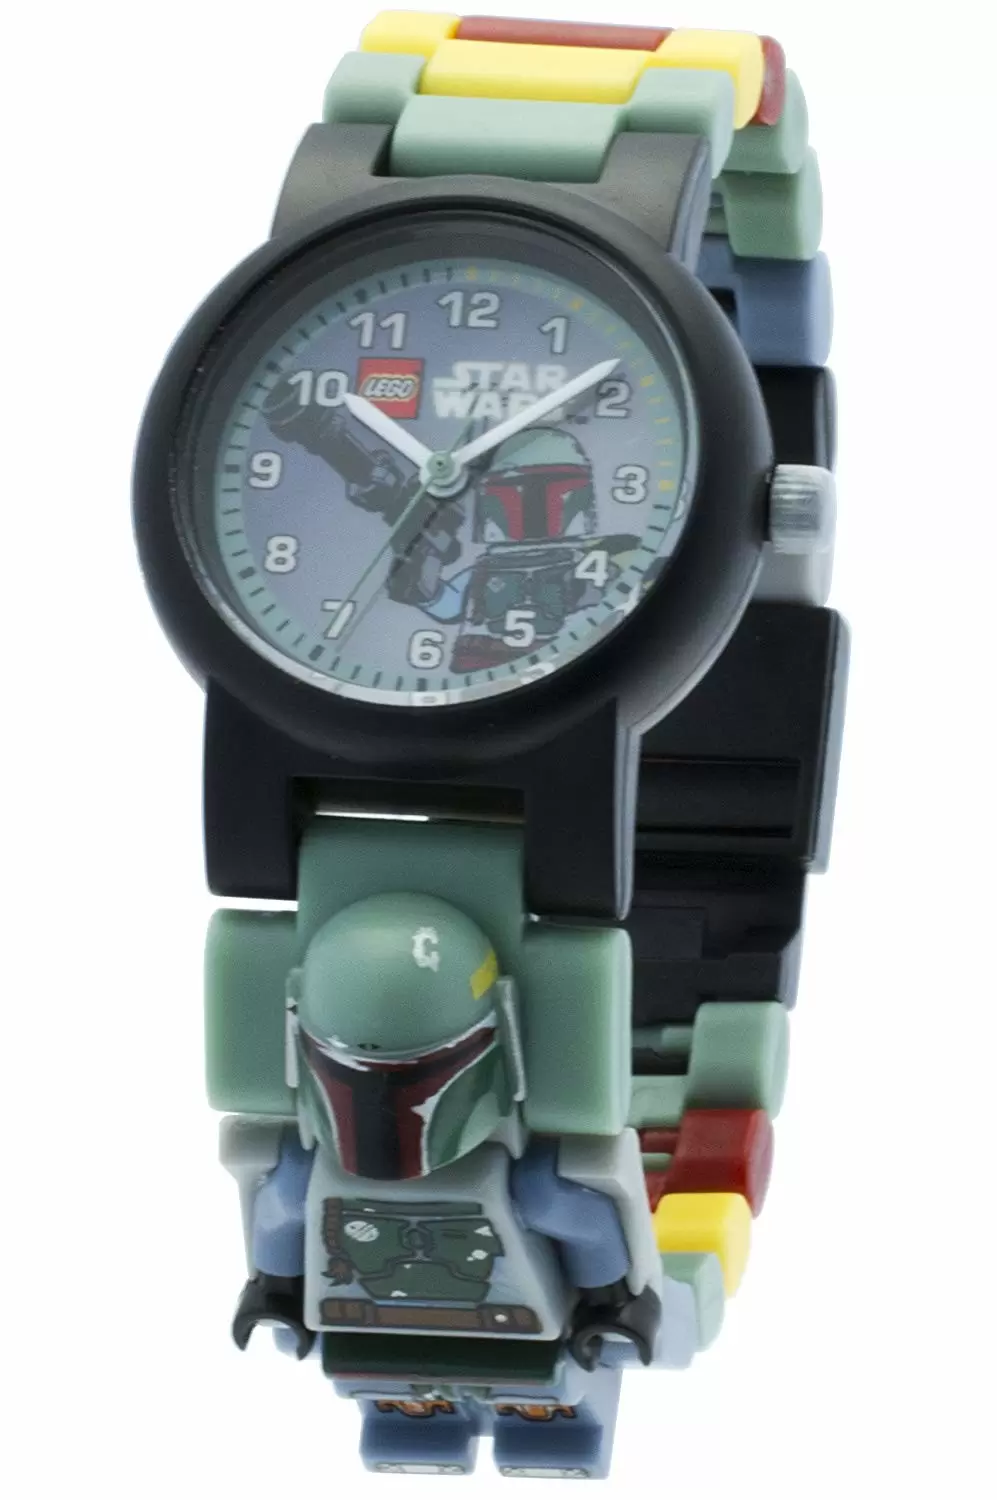 LEGO Watches - LEGO Star Wars Boba Fett Mini Figure Link Watch